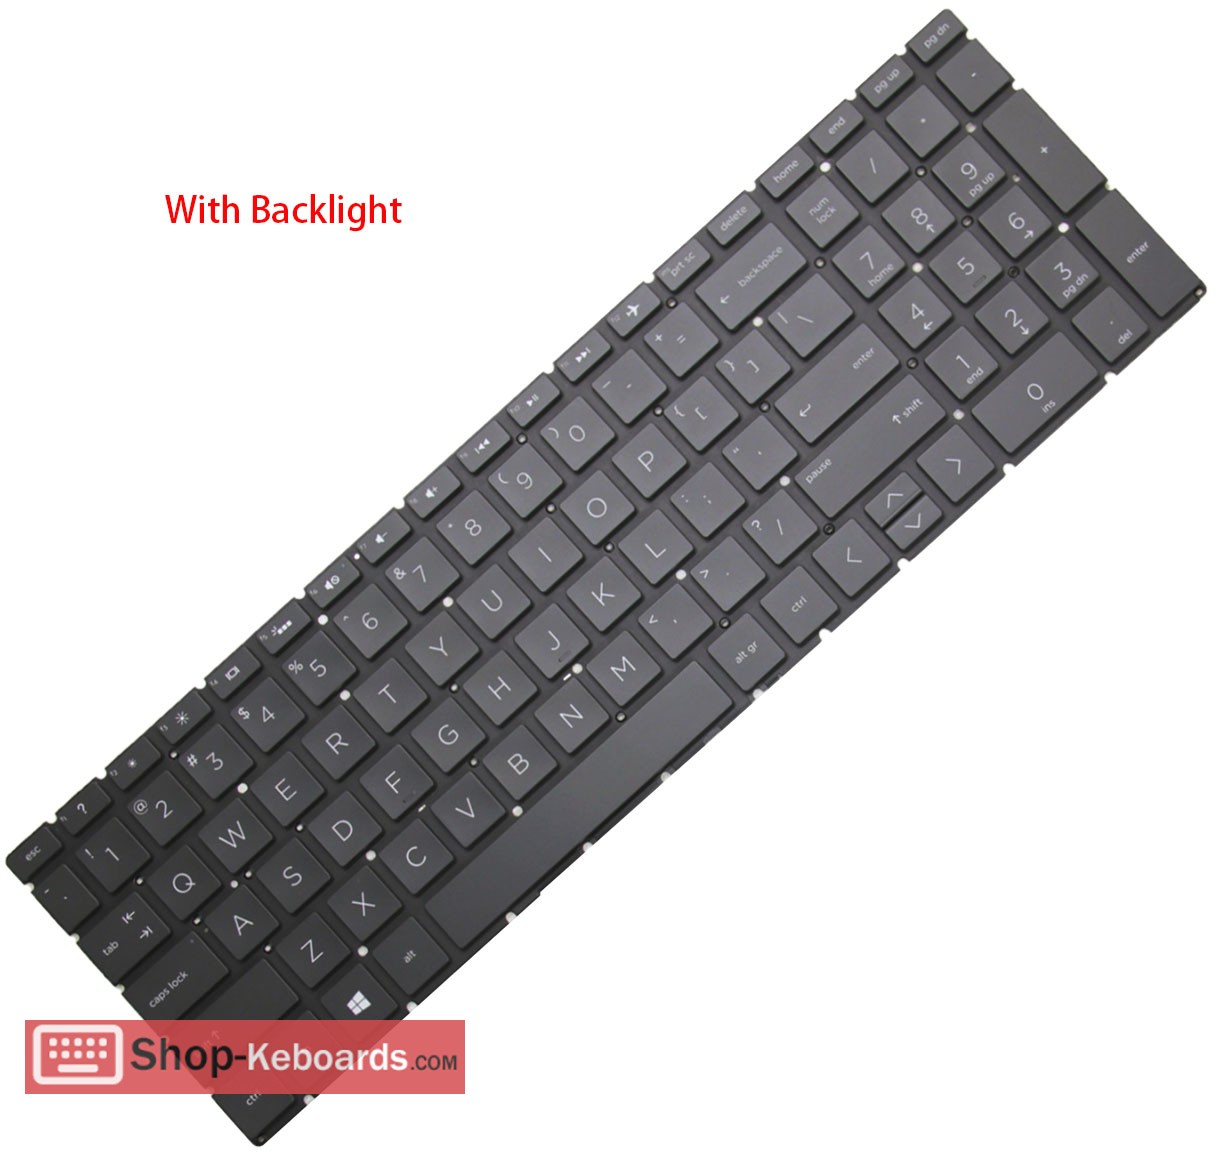 HP PAVILION 15-CW1004LA  Keyboard replacement